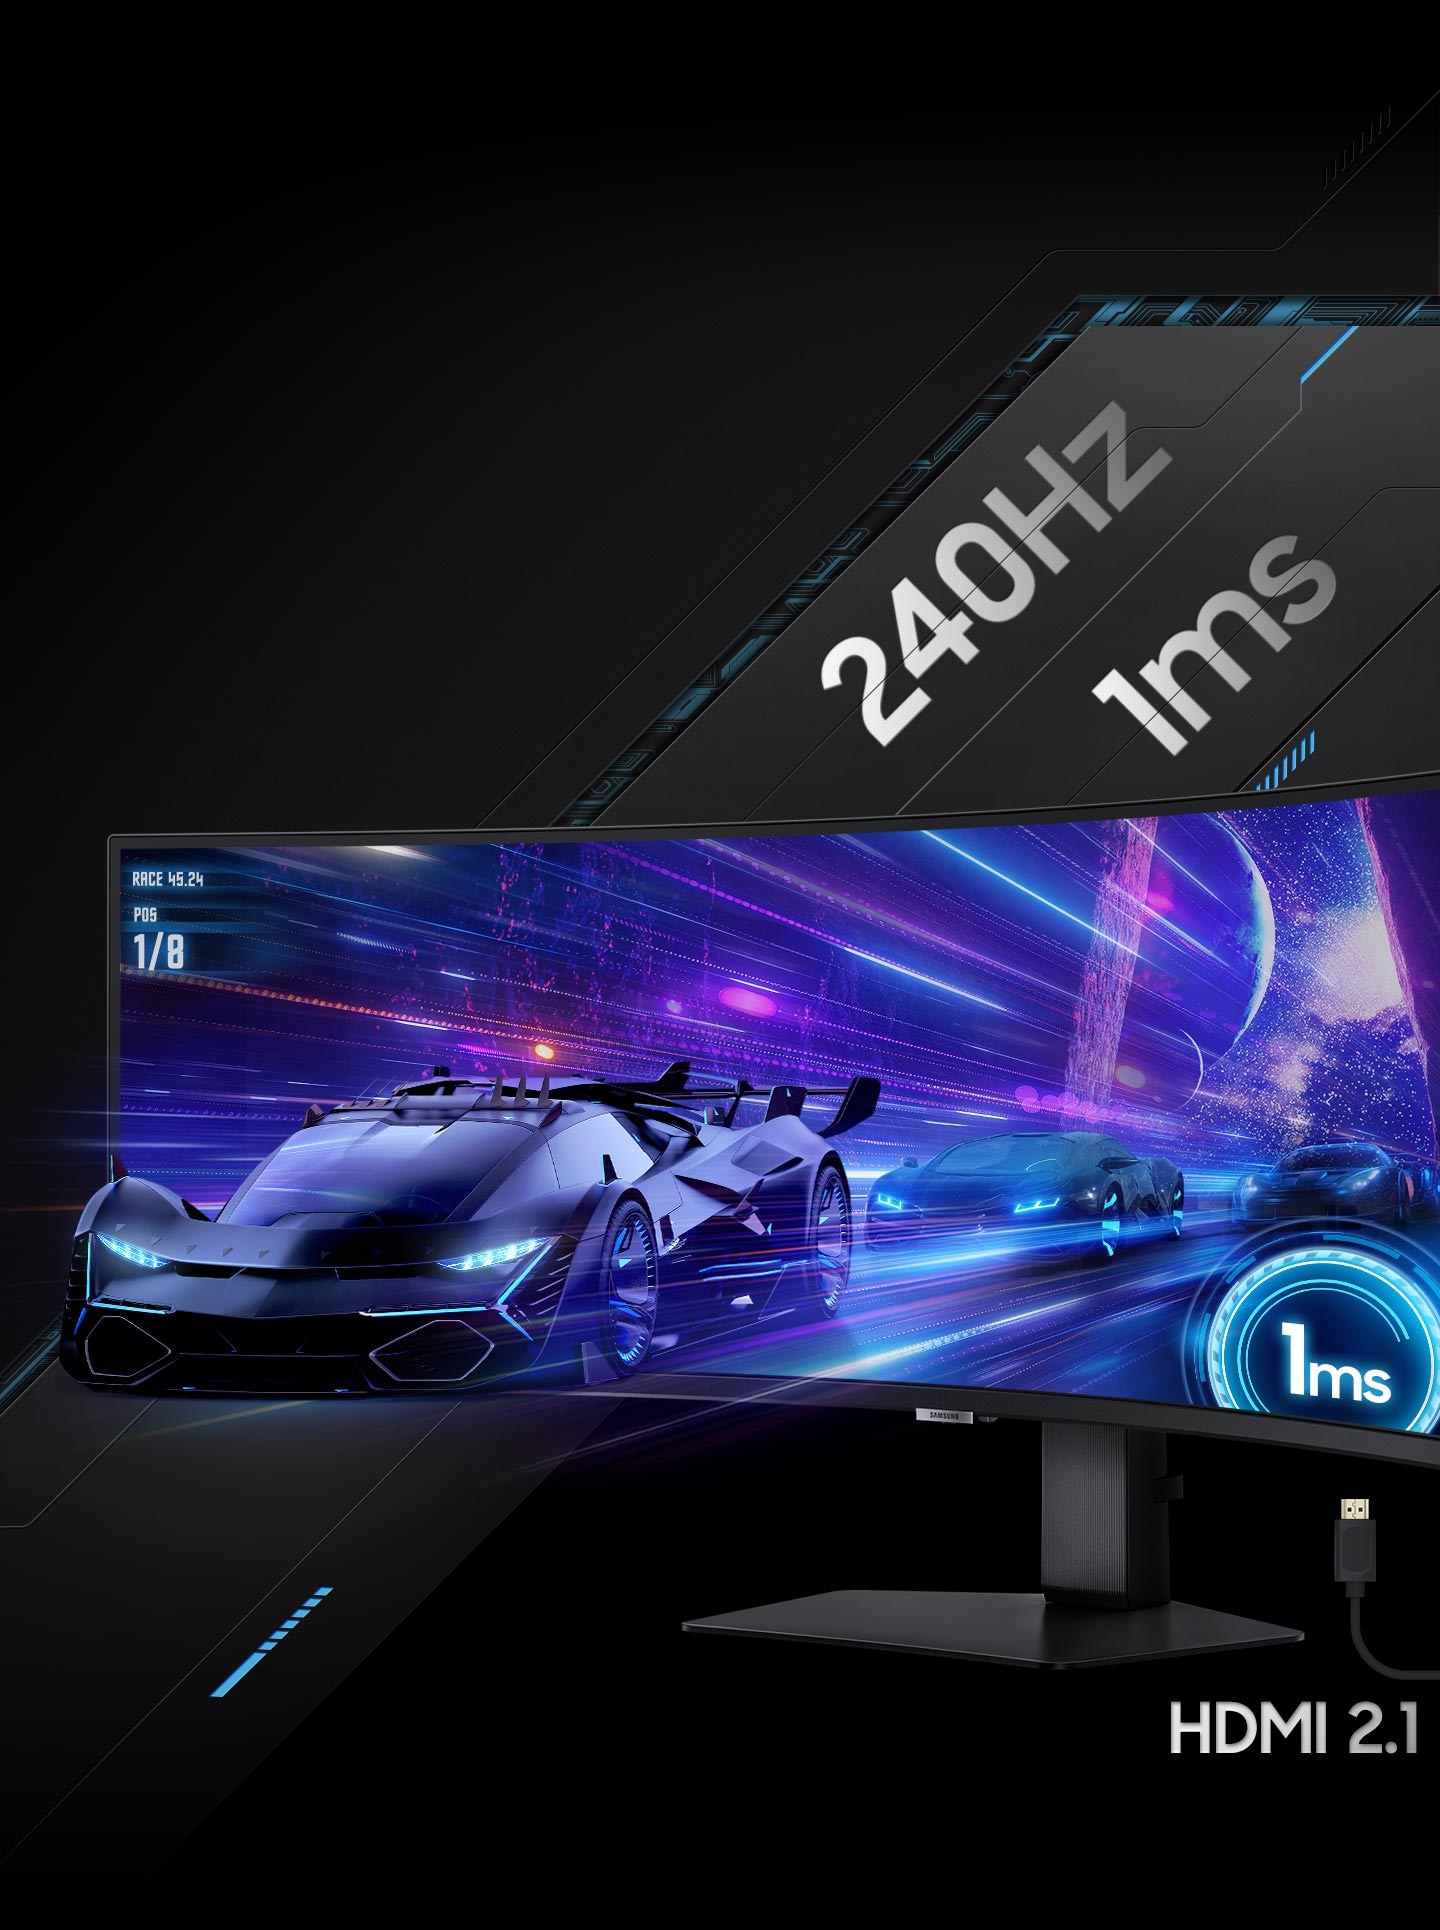 Trên màn hình hiển thị, những chiếc ô tô chạy đua ra khỏi màn hình, chạy khỏi một thành phố tương lai. Cáp kết nối có nhãn “HDMI 2.1” được hiển thị bên dưới màn hình hiển thị.